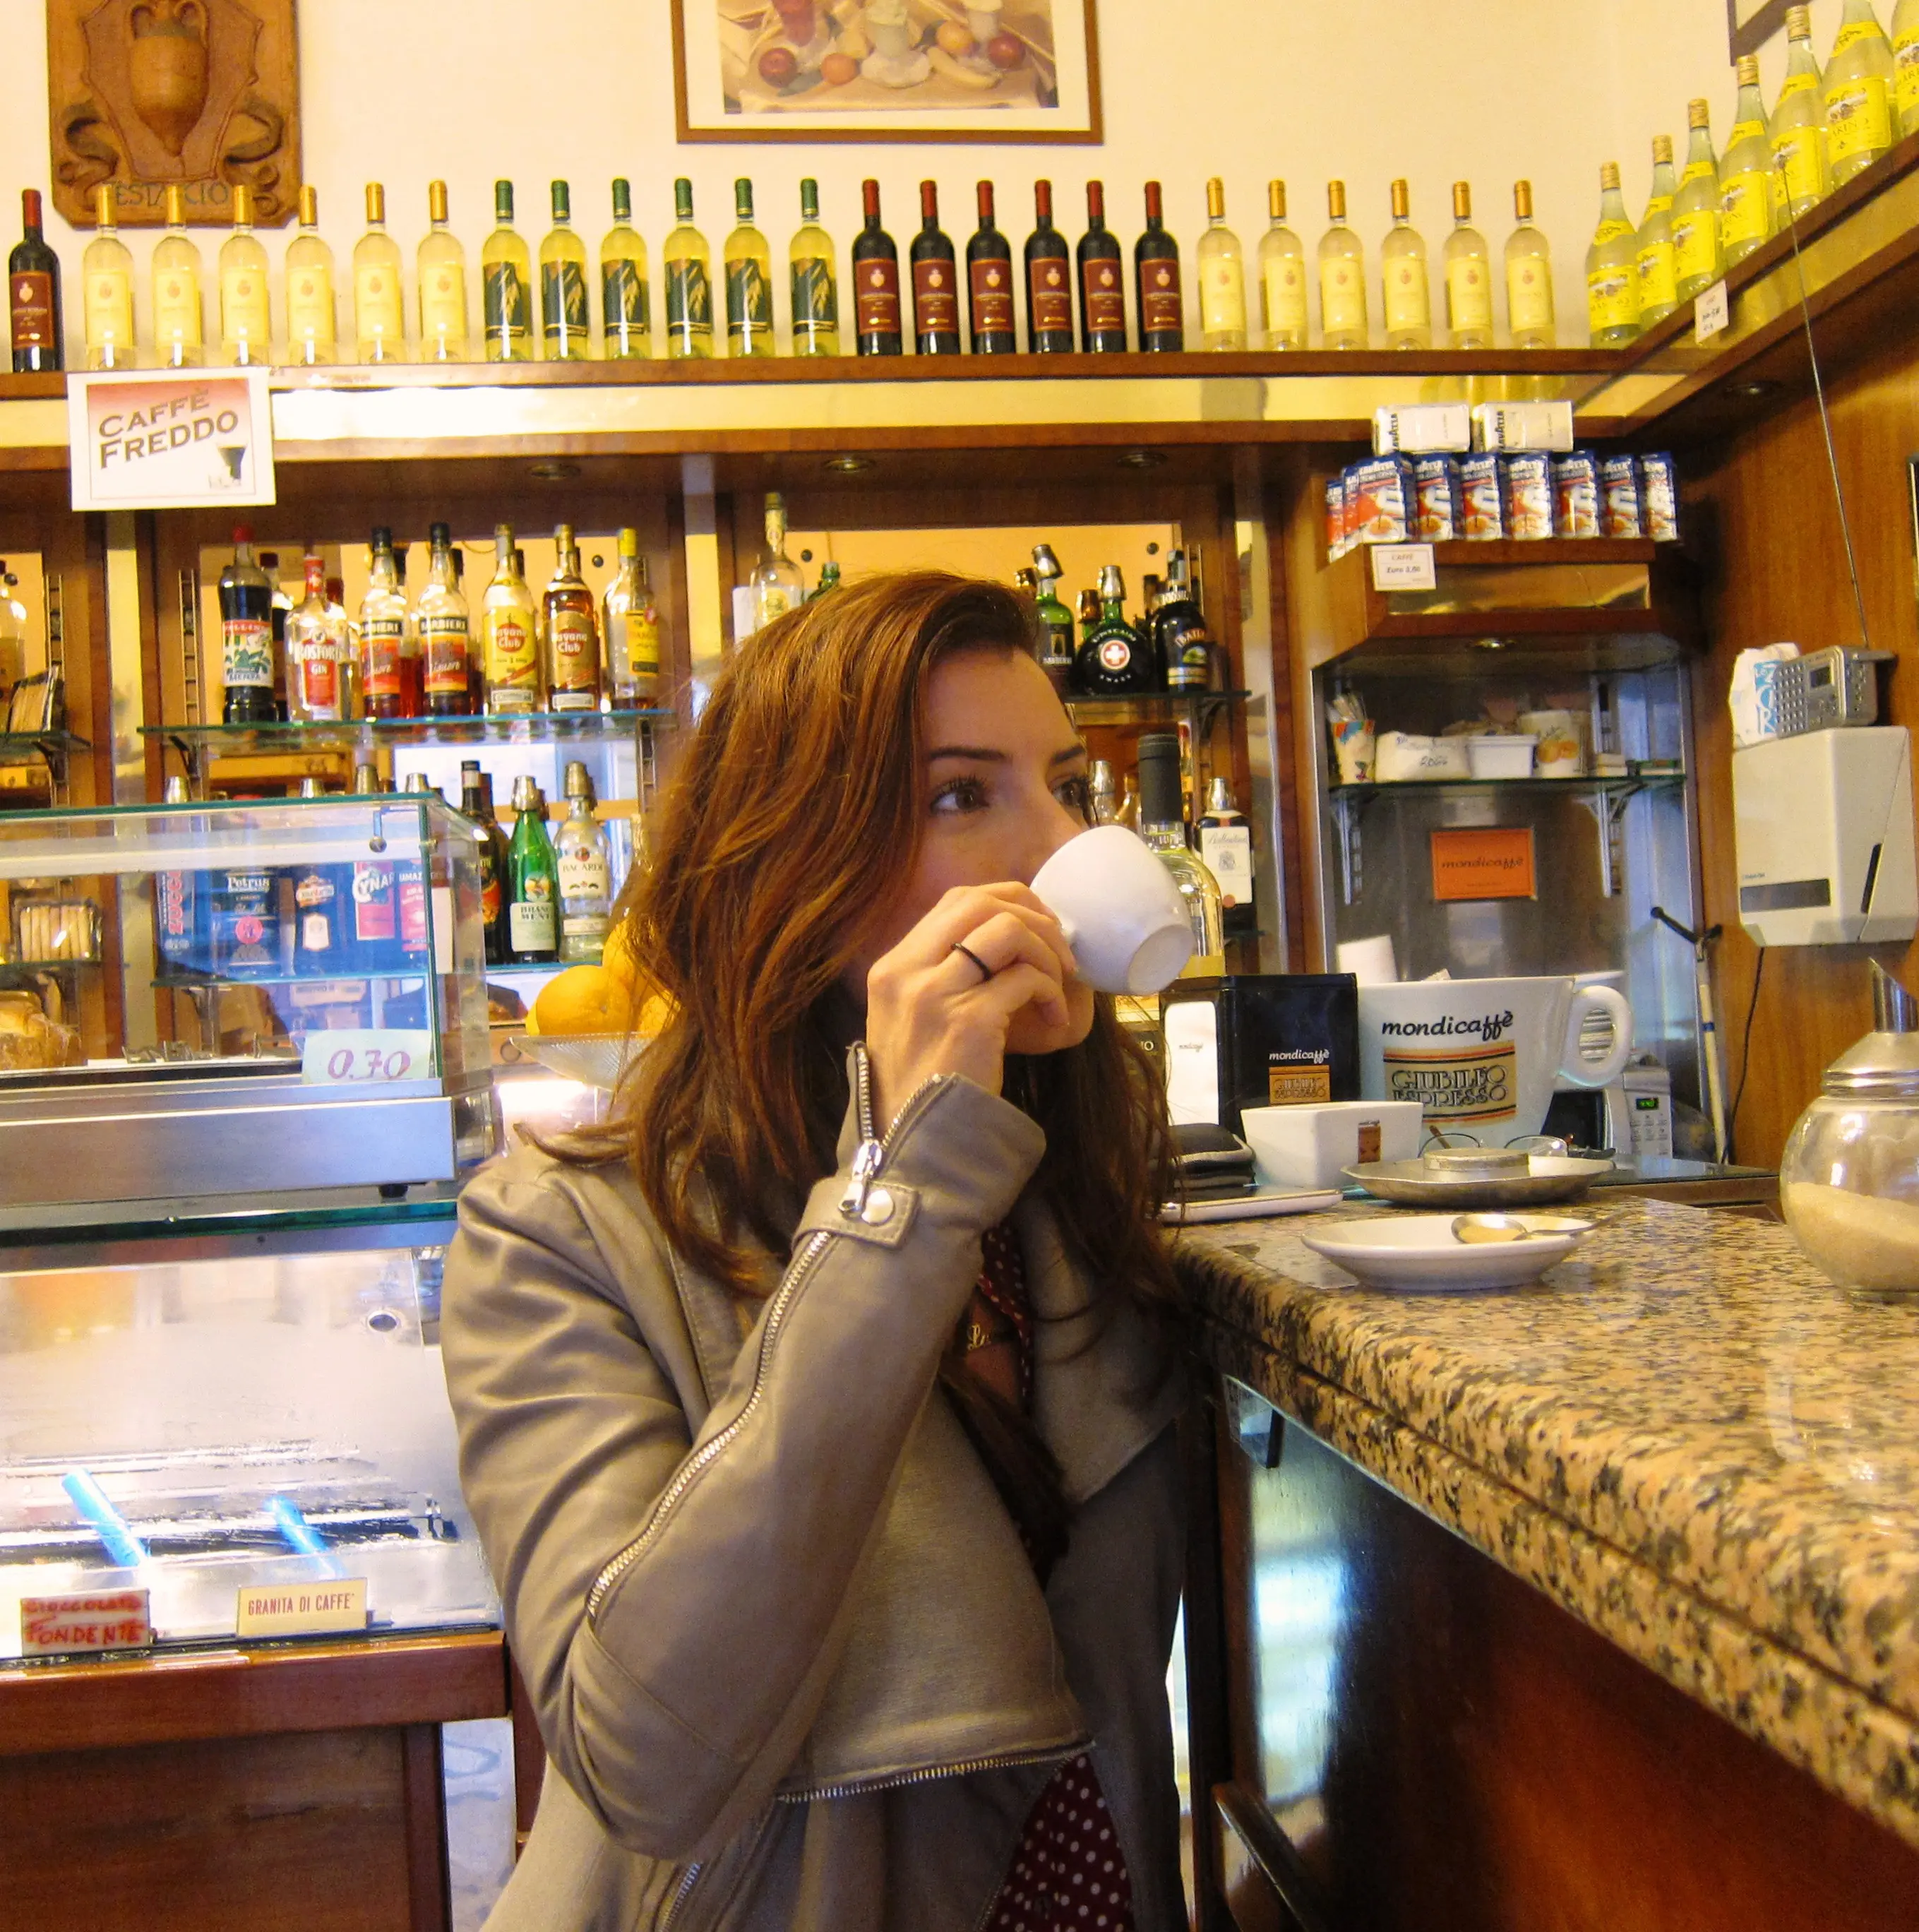 Meneguk secangkir kopi di Italia. (Sumber Foto: eatingitalyfoodtours.com)